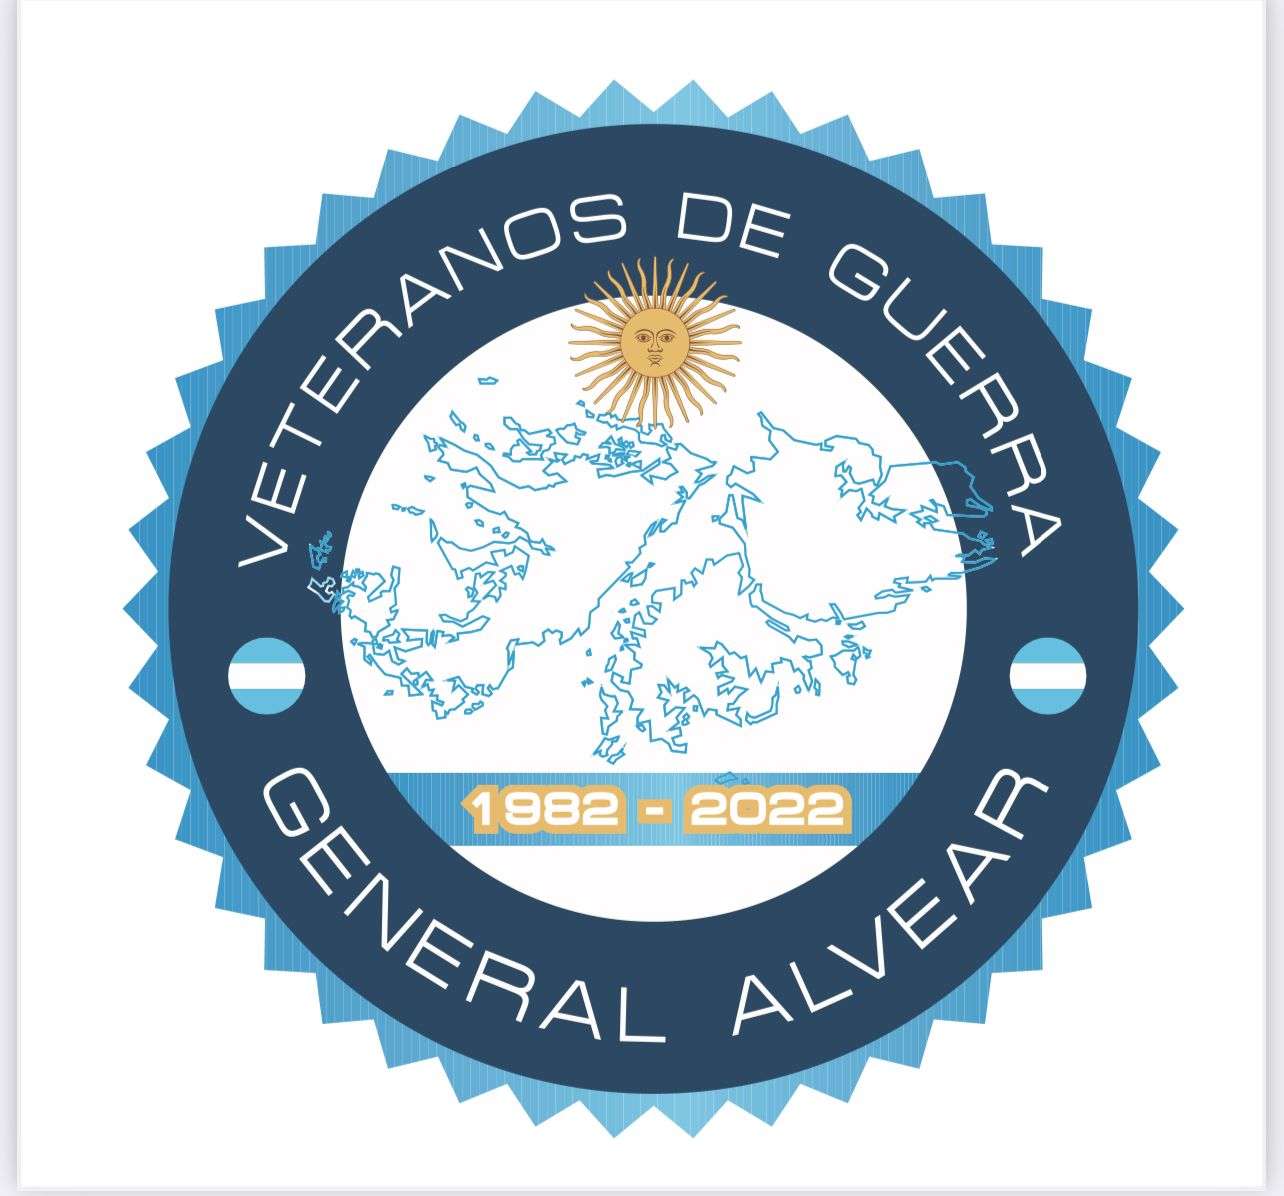 Malvinas 40 años: En General Alvear repartirán calcos recordatorios gratuitos a los vecinos 